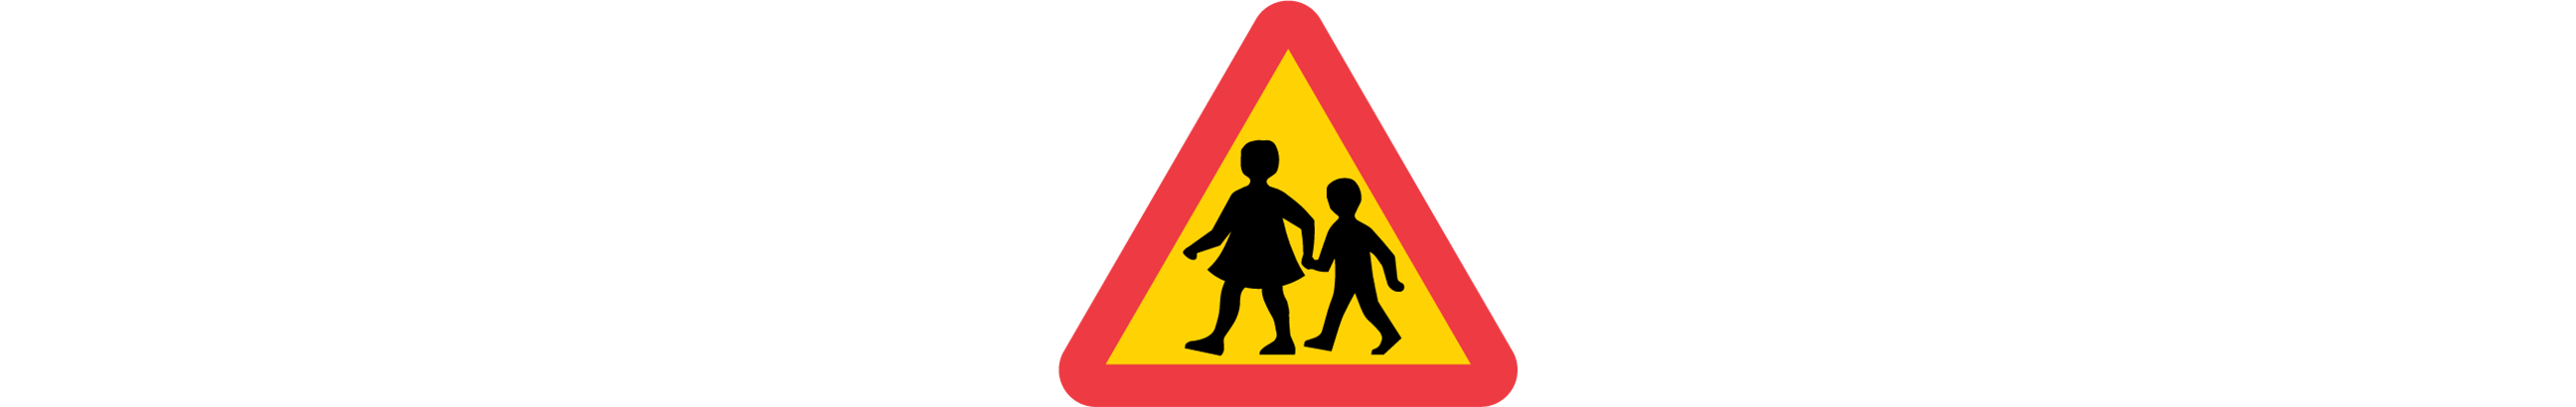 varning för barn